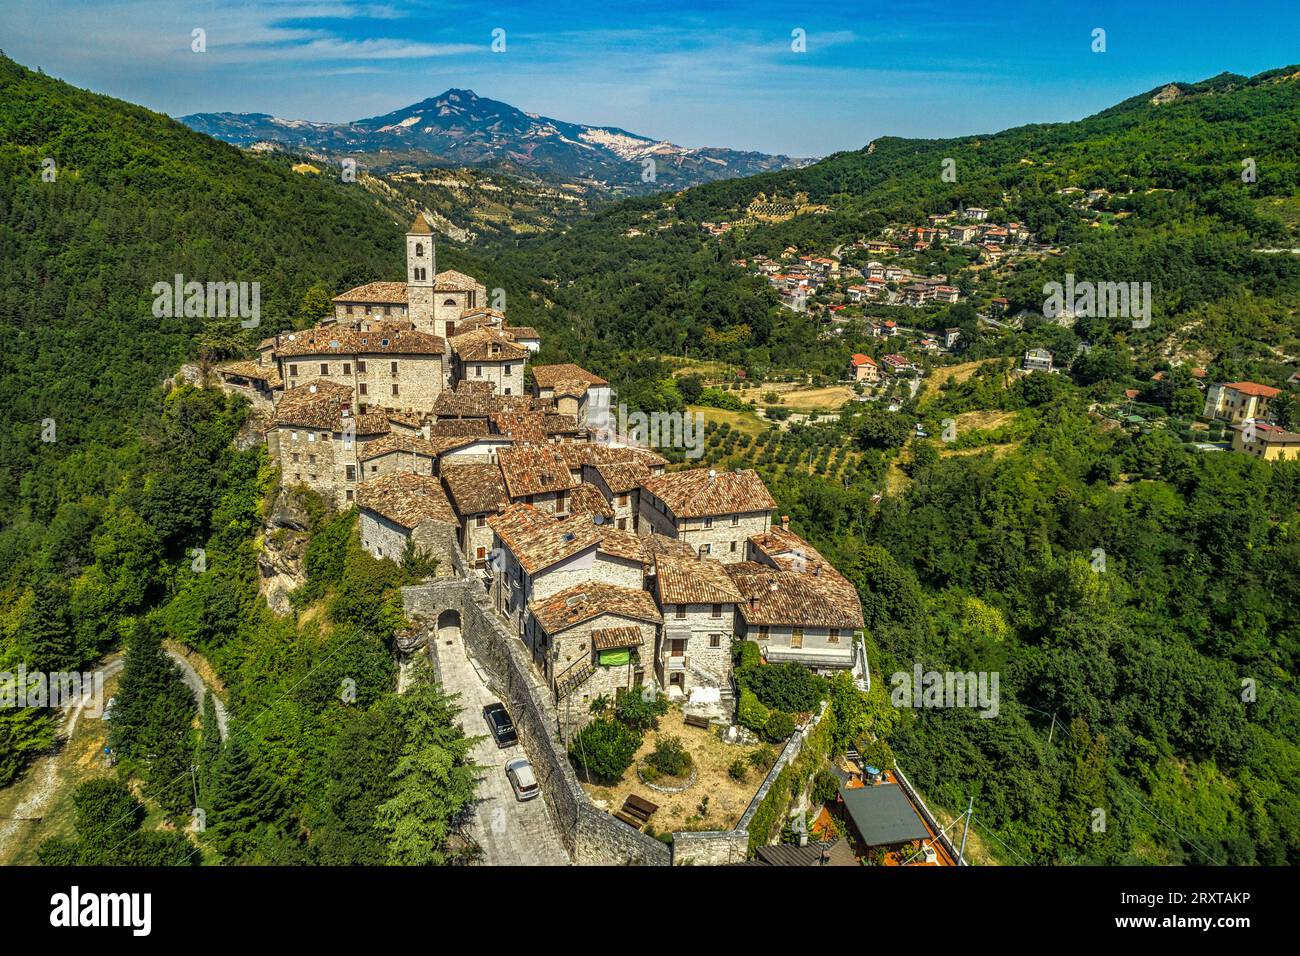 Veduta aerea di Castel Trosino circondata da verdi boschi con la chiesa di San Lorenzo Martire sulla sommità della scogliera in travertino. Regione Marche Foto Stock